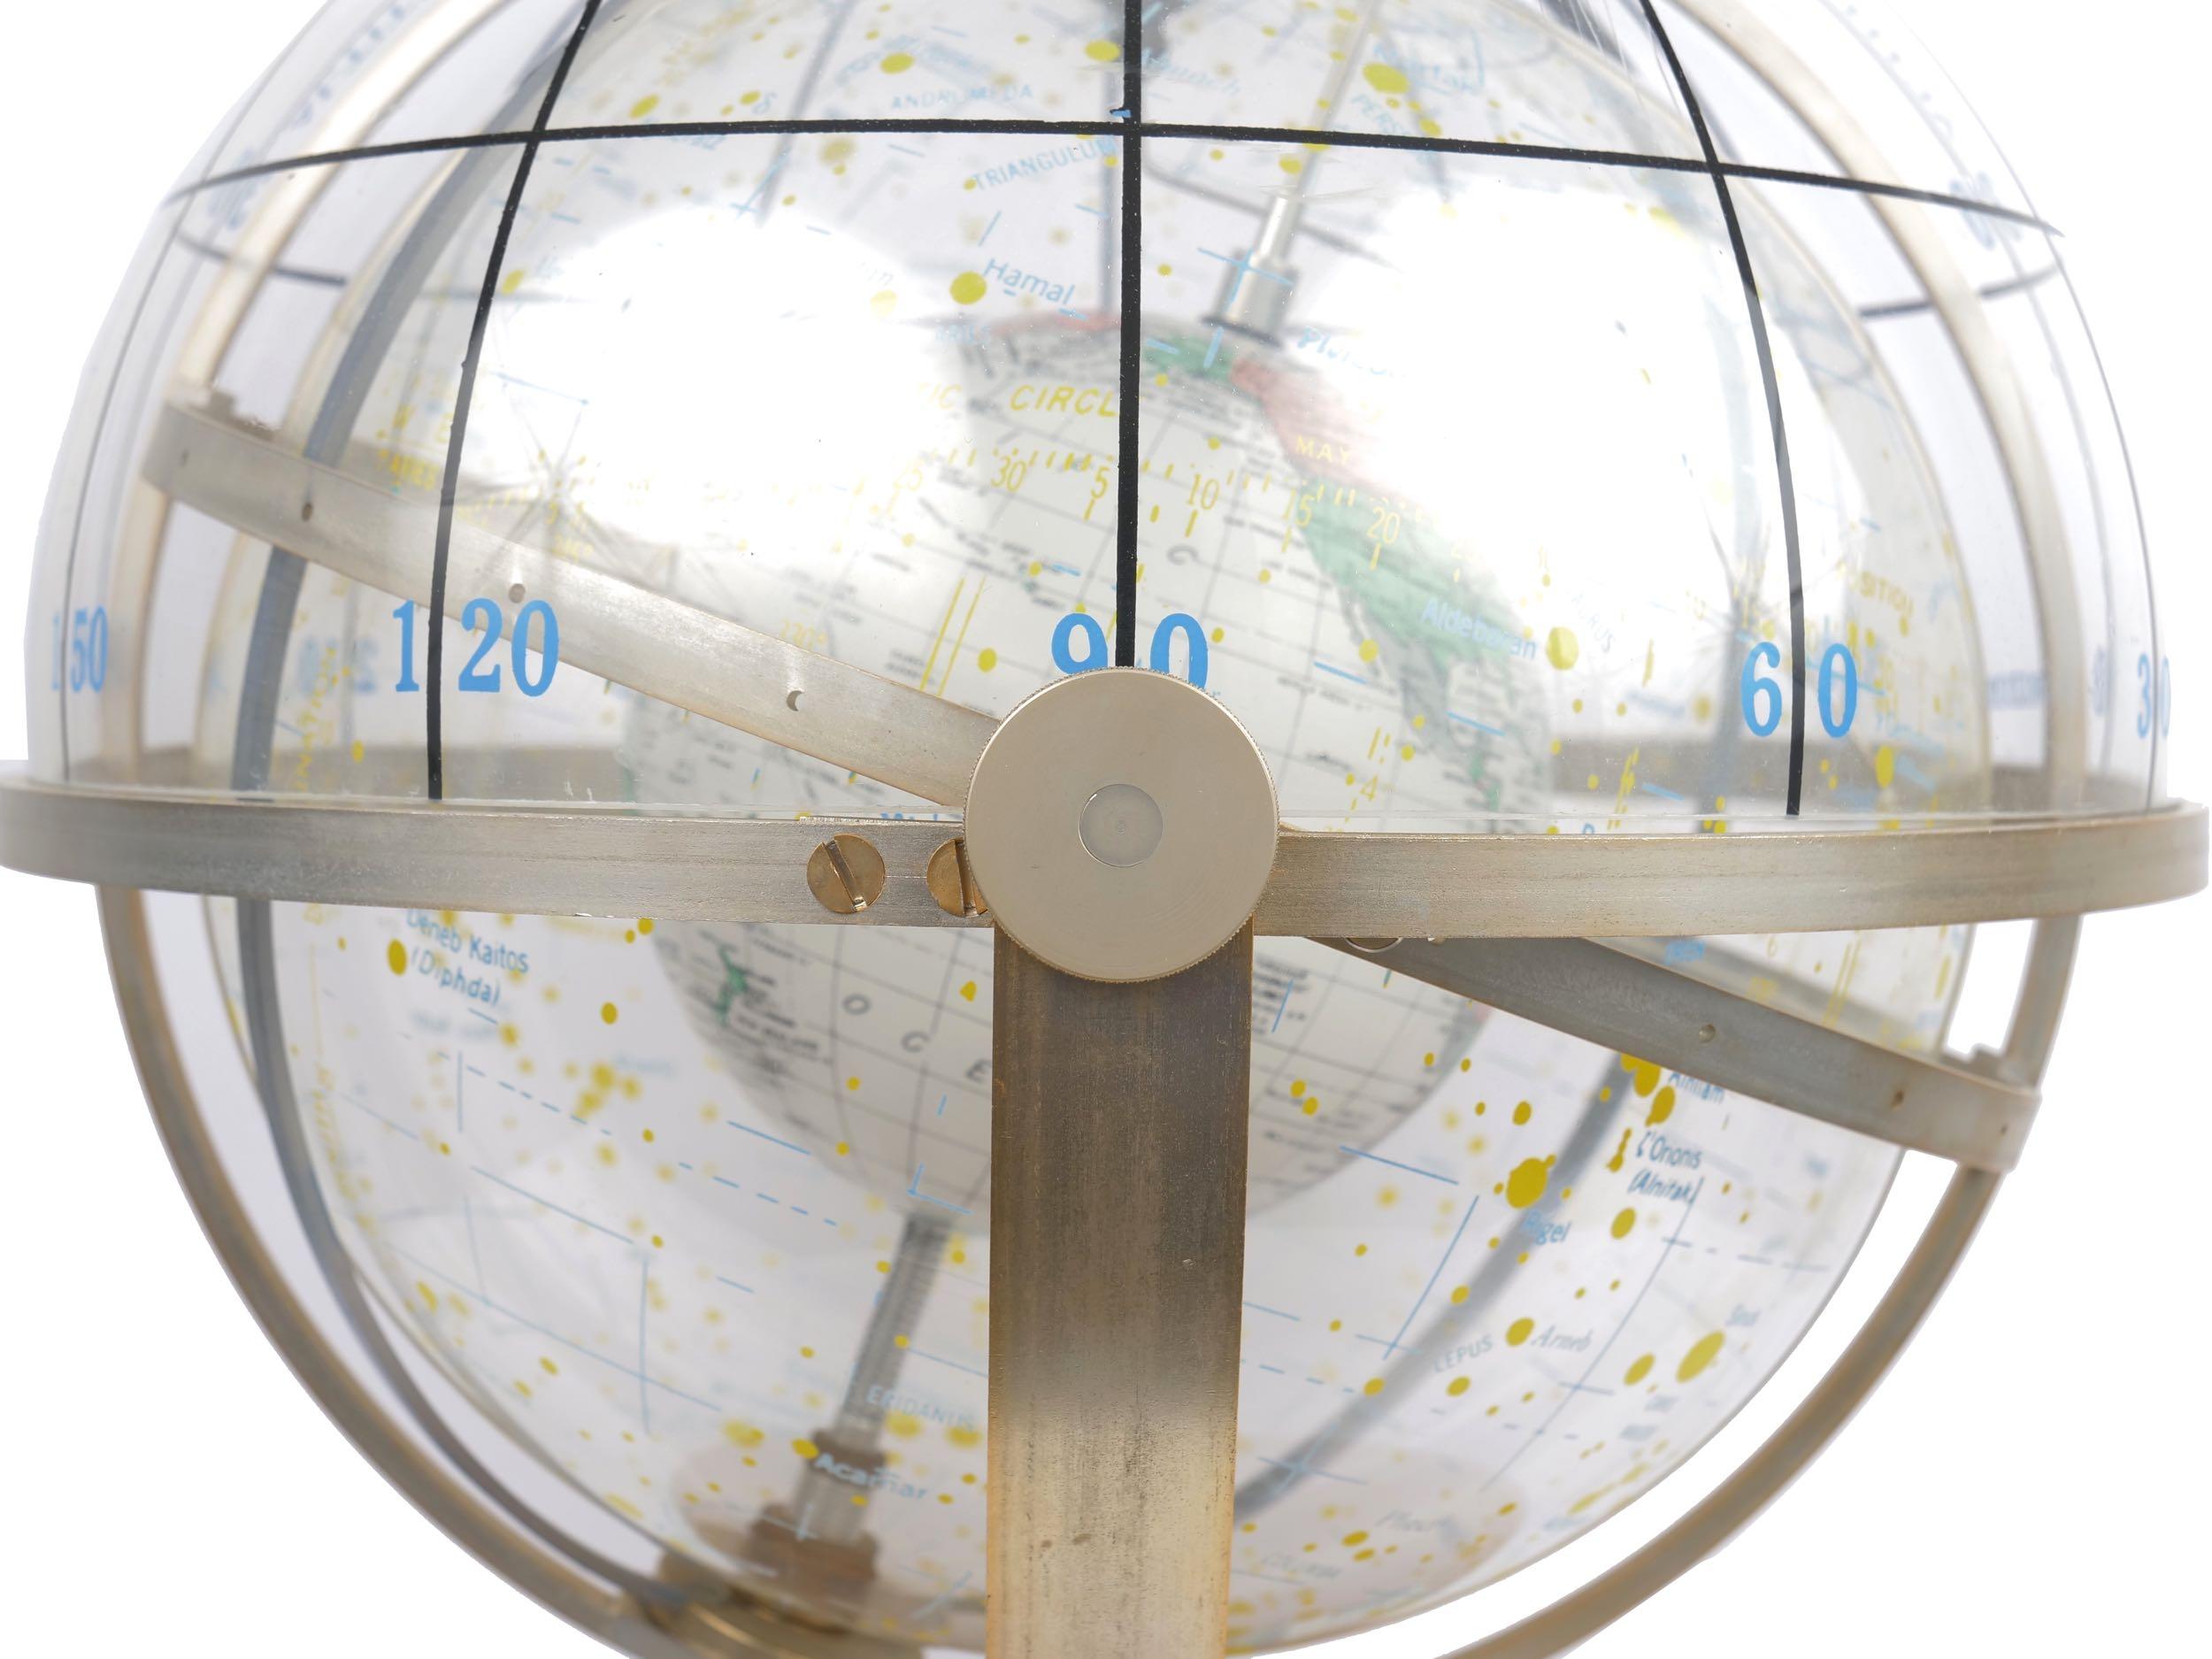 Farquhar Celestial Navigation Armillary Sphere Globe for Dept. of Navy 6